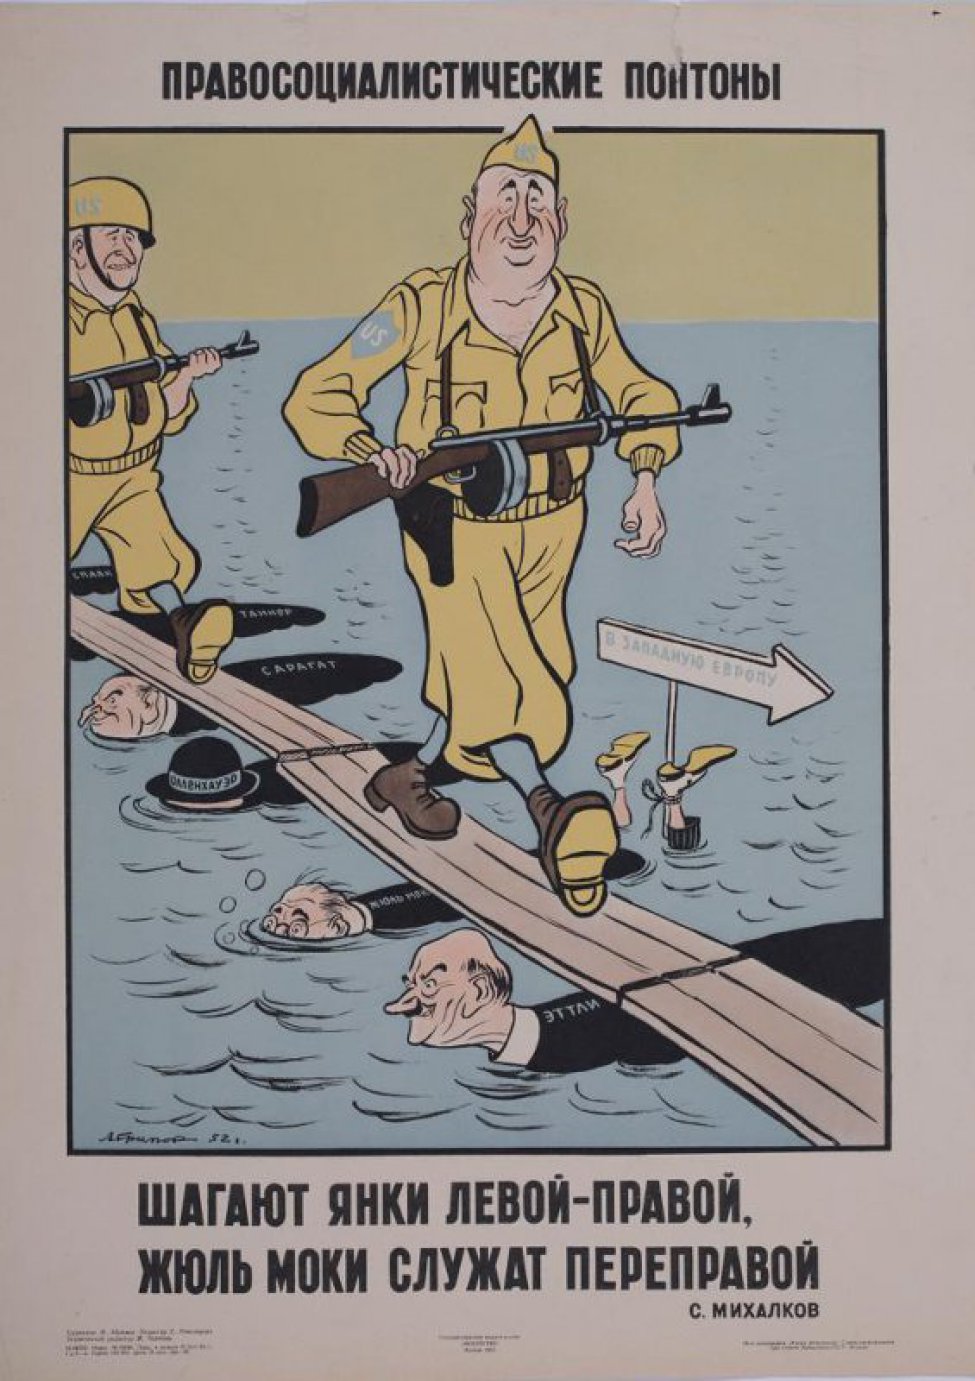 Изображены два солдата с автоматами в руках, в желтых костюмах со знаками на рукавах и касках. "US" шагающие по доскам, лежащим на человеческих фигурах, плывущих по воде с надписями "Спаак, танкер, сарачат, олленхауэр, Жюль- мок, к ногам которого виднеющимся из воды привязана стрелка с надписью " Шагают янки левой- правой Жюльмоки  служит переправой  С.Михалков".